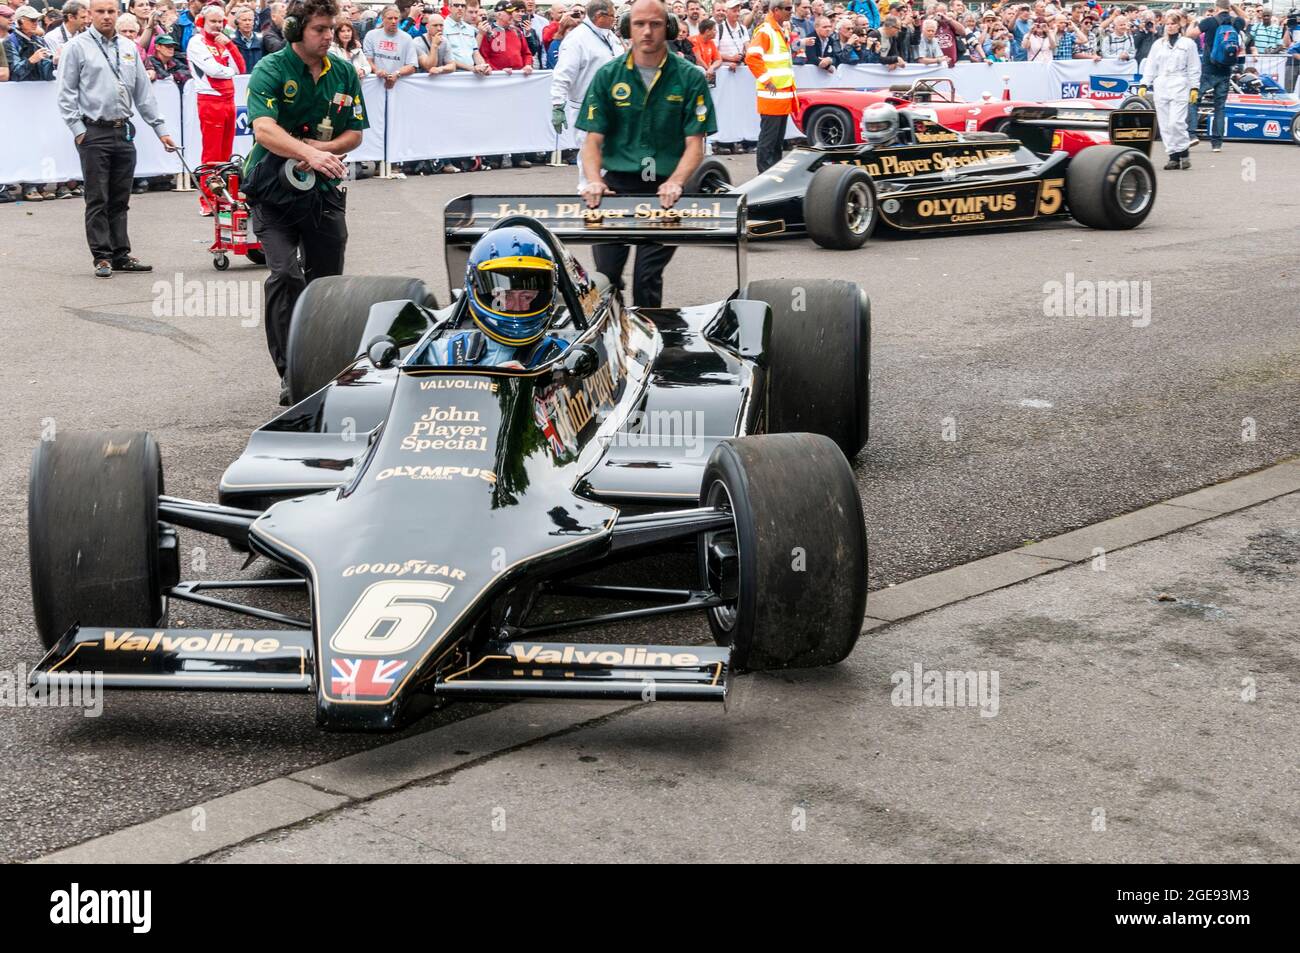 Lotus 79 Formel 1, Grand-Prix-Rennwagen beim Goodwood Festival of Speed-Rennsport-Event 2014, beim Ausfahren aus dem Fahrerlager. John Player Team Lotus Stockfoto